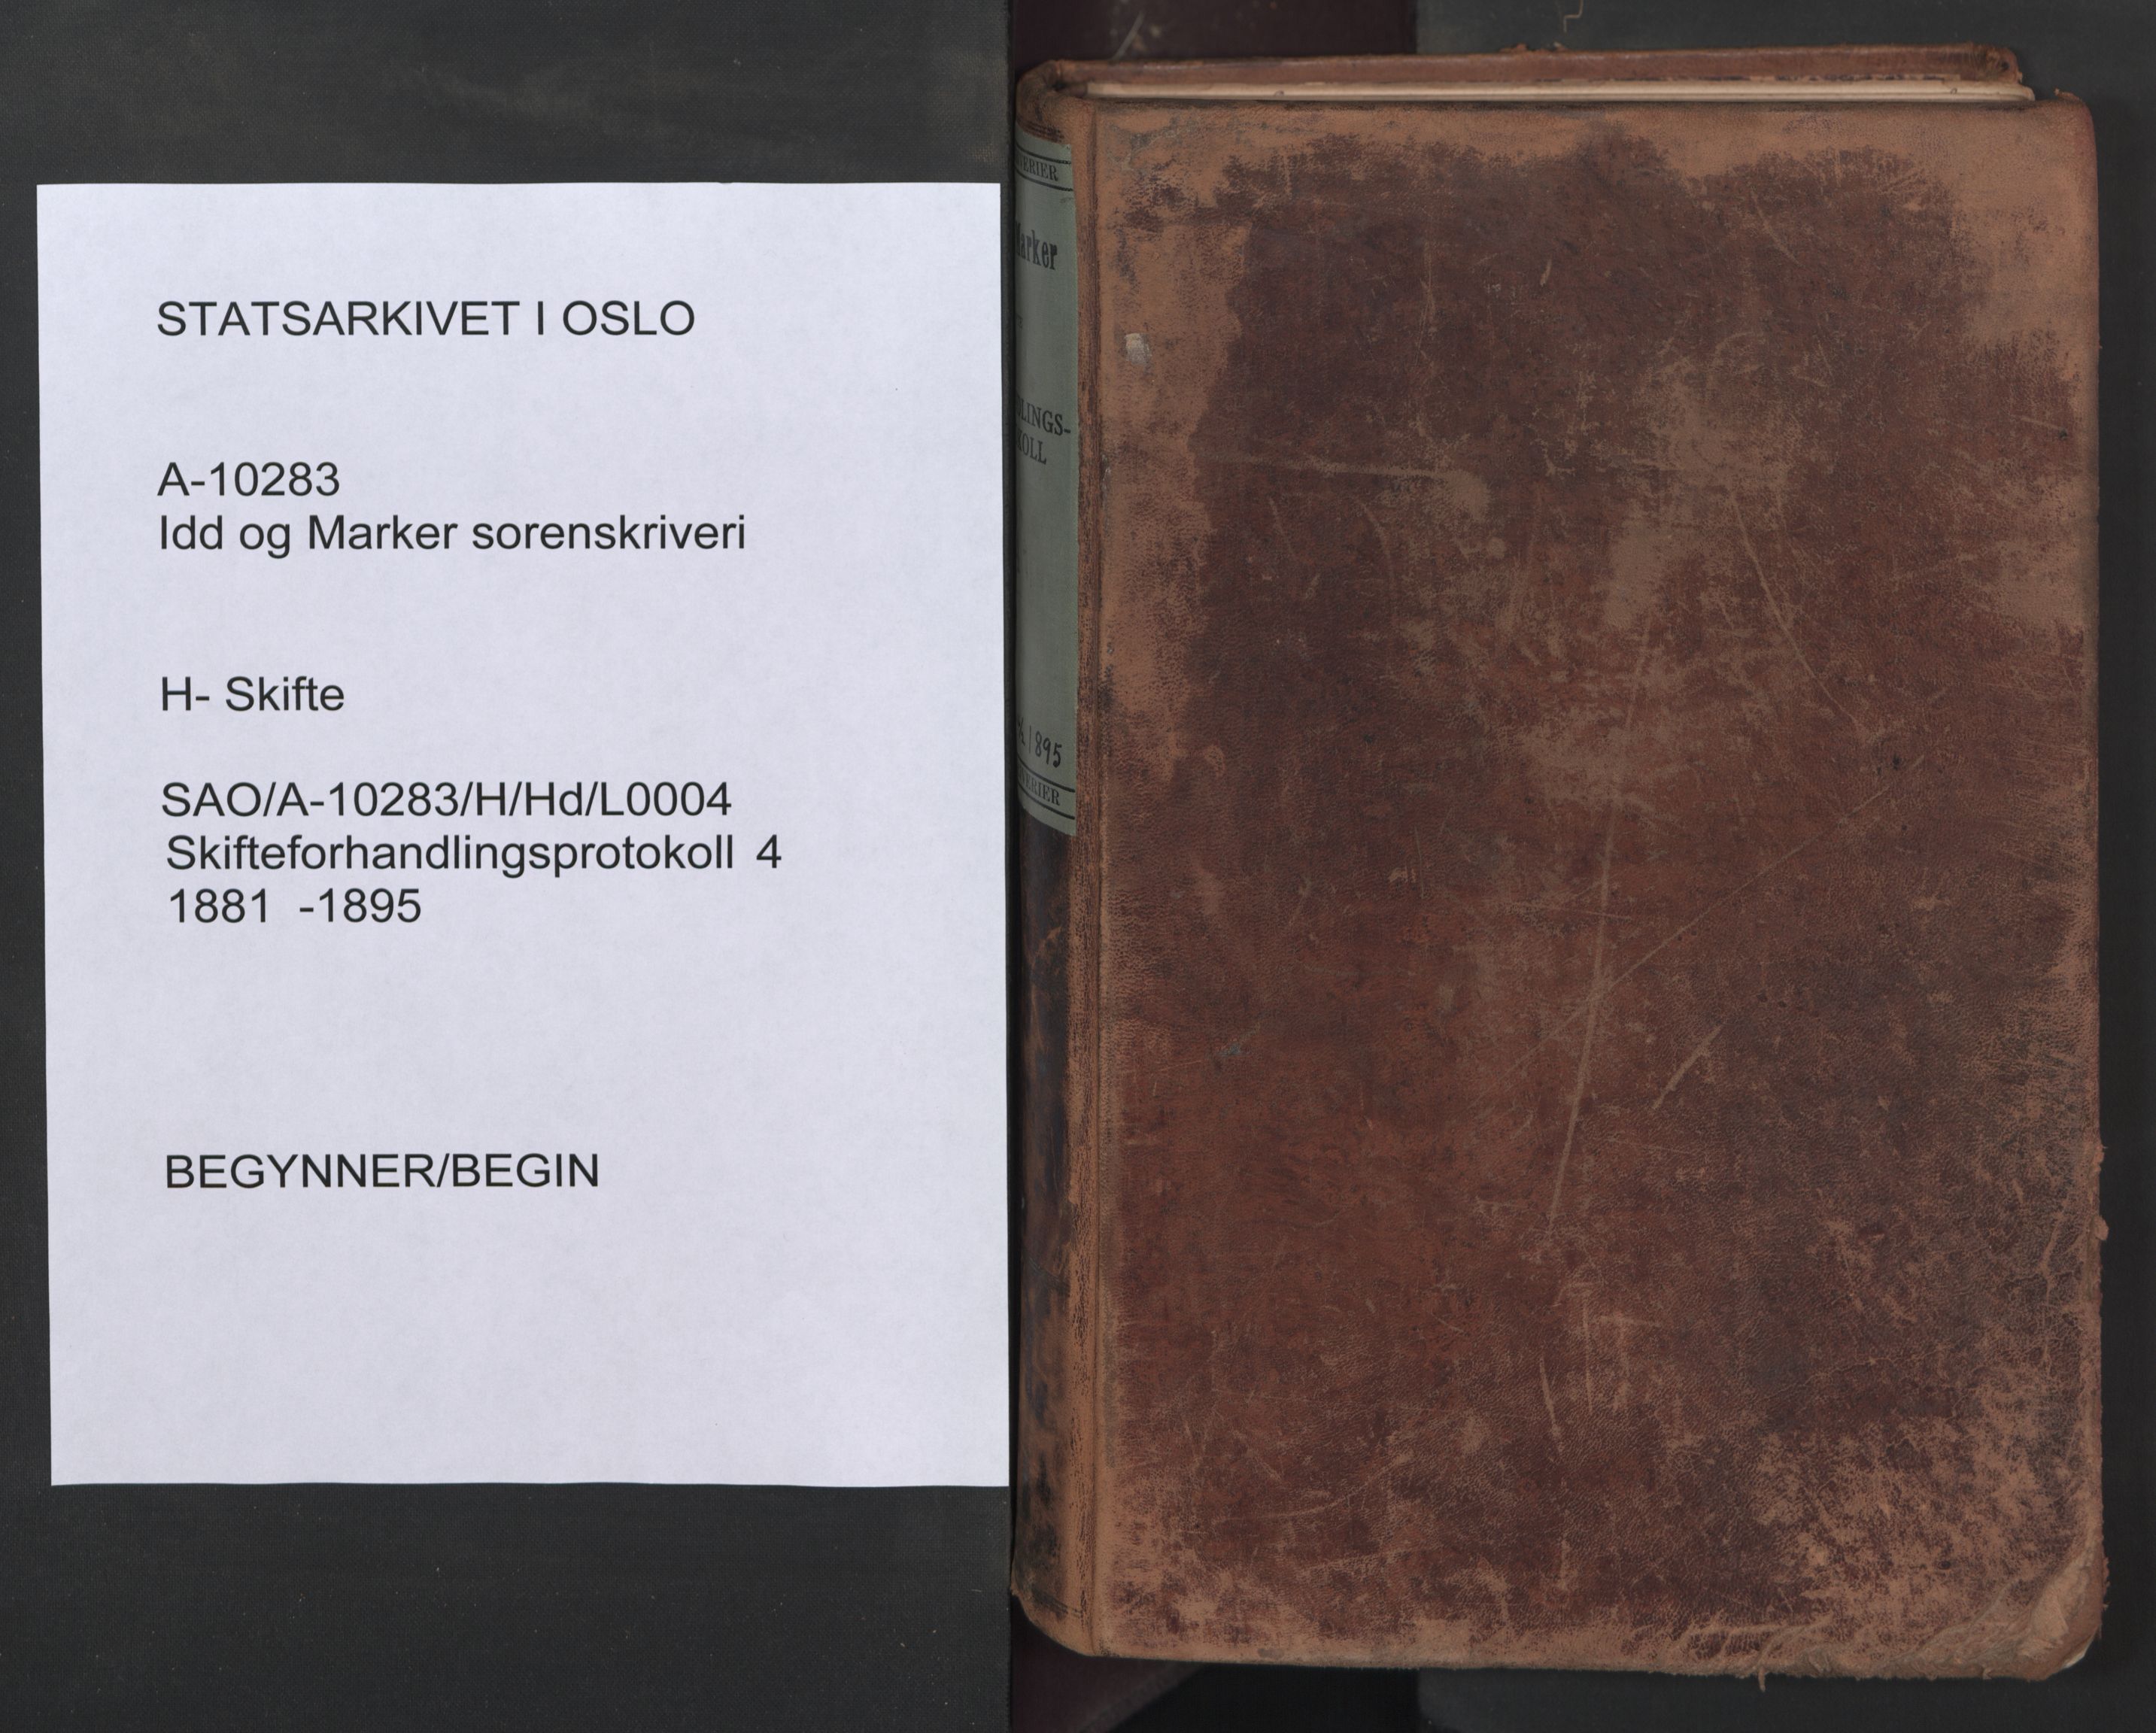 Idd og Marker sorenskriveri, SAO/A-10283/H/Hd/L0004: Skifteforhandlingsprotokoll, 1881-1895